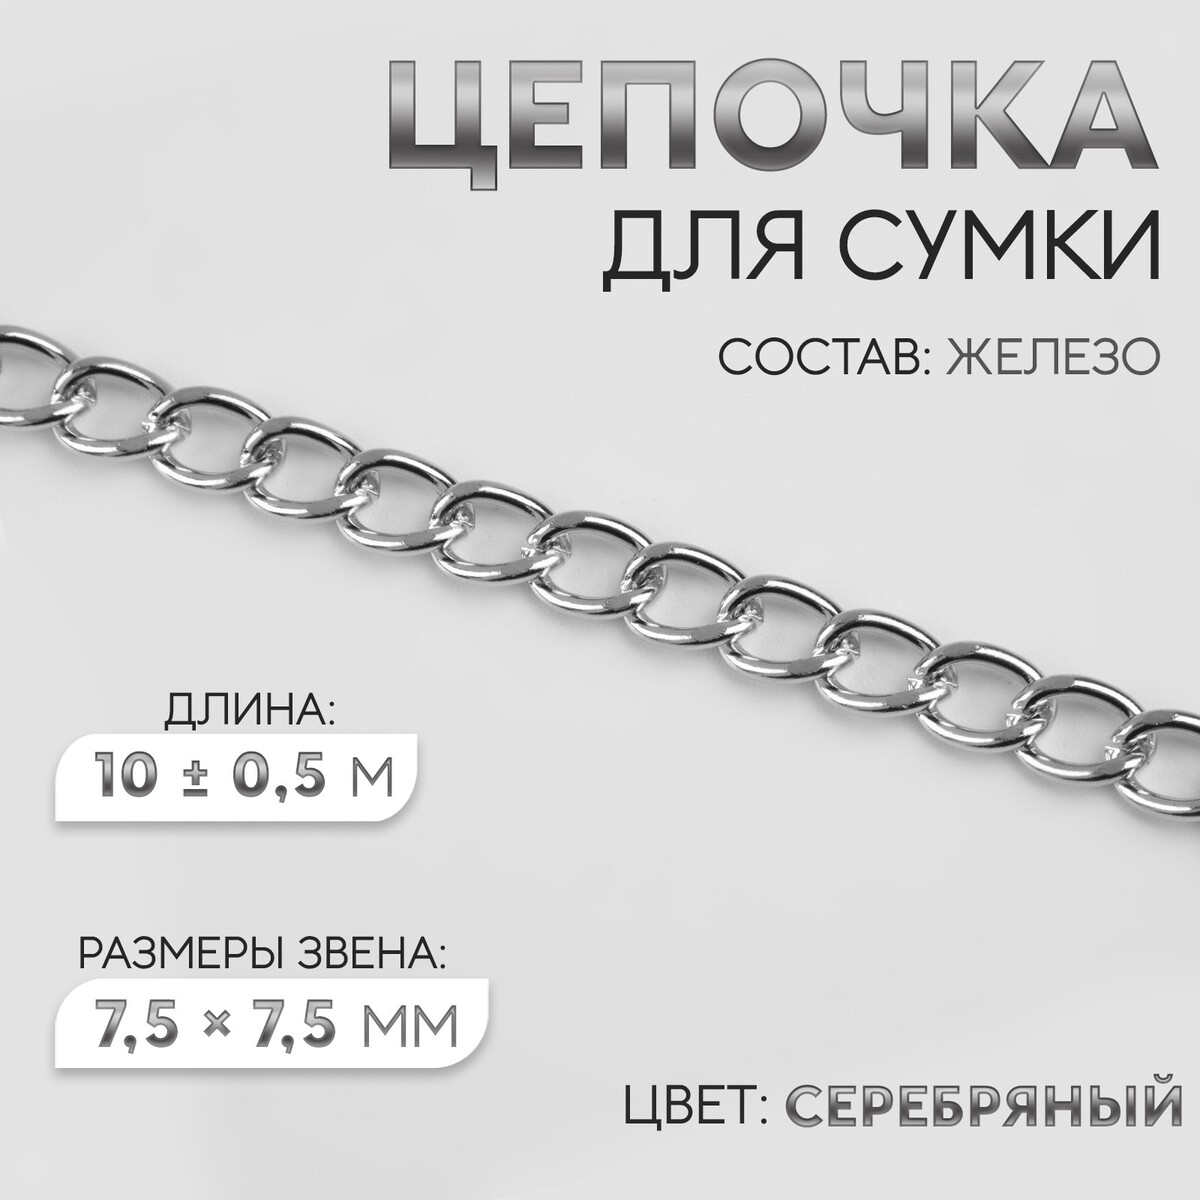 Цепочка для сумки, железная, 7,5 × 7,5 мм, 10 ± 0,5 м, цвет серебряный цепочка для сумки железная 7 × 5 мм 10 ± 0 5 м серебряный